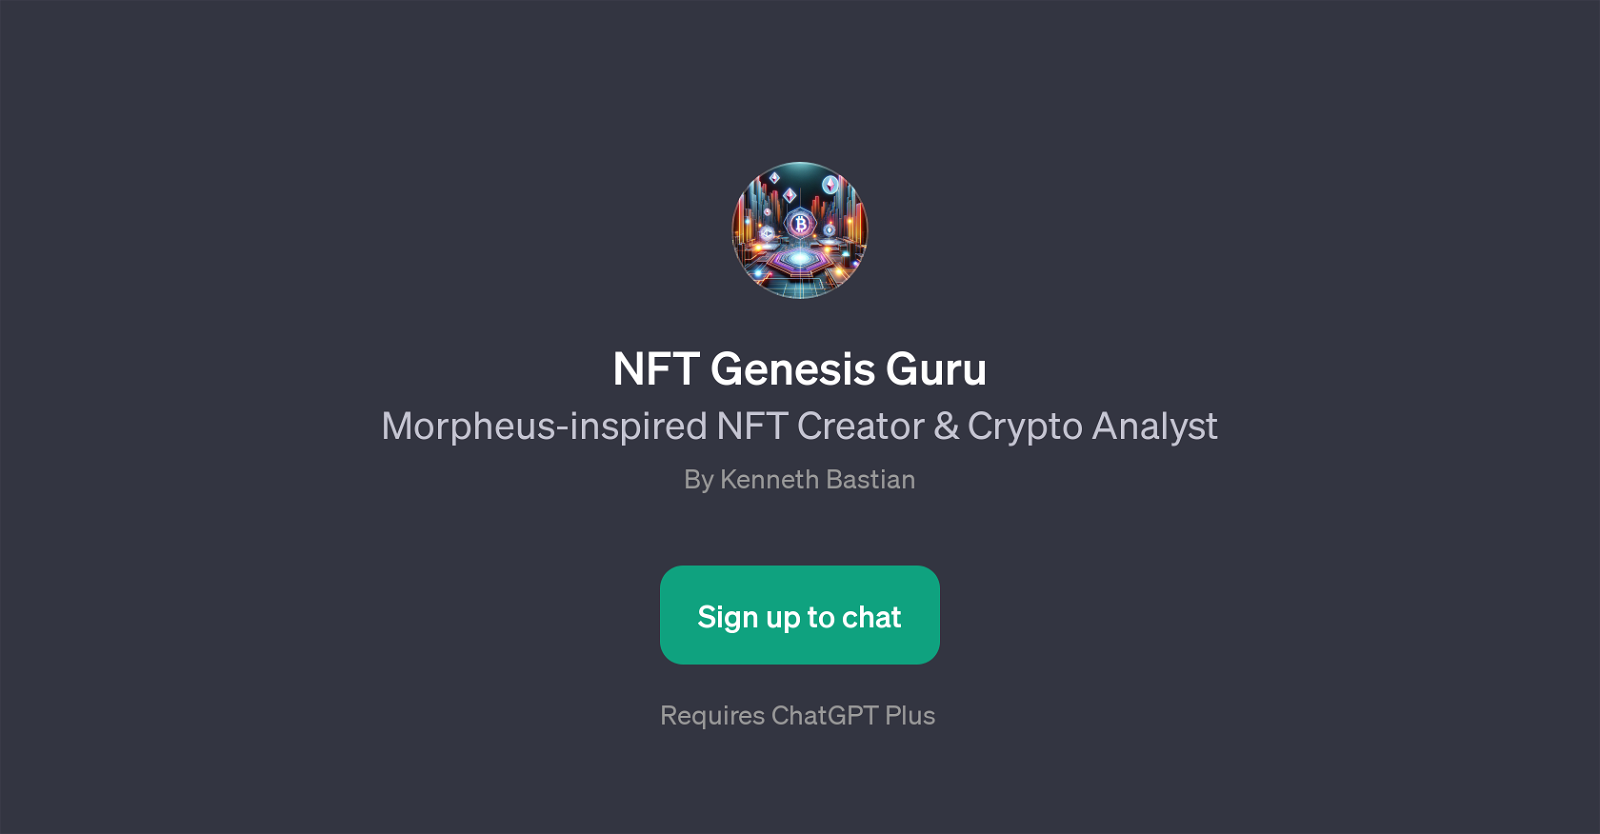 NFT Genesis Guru website